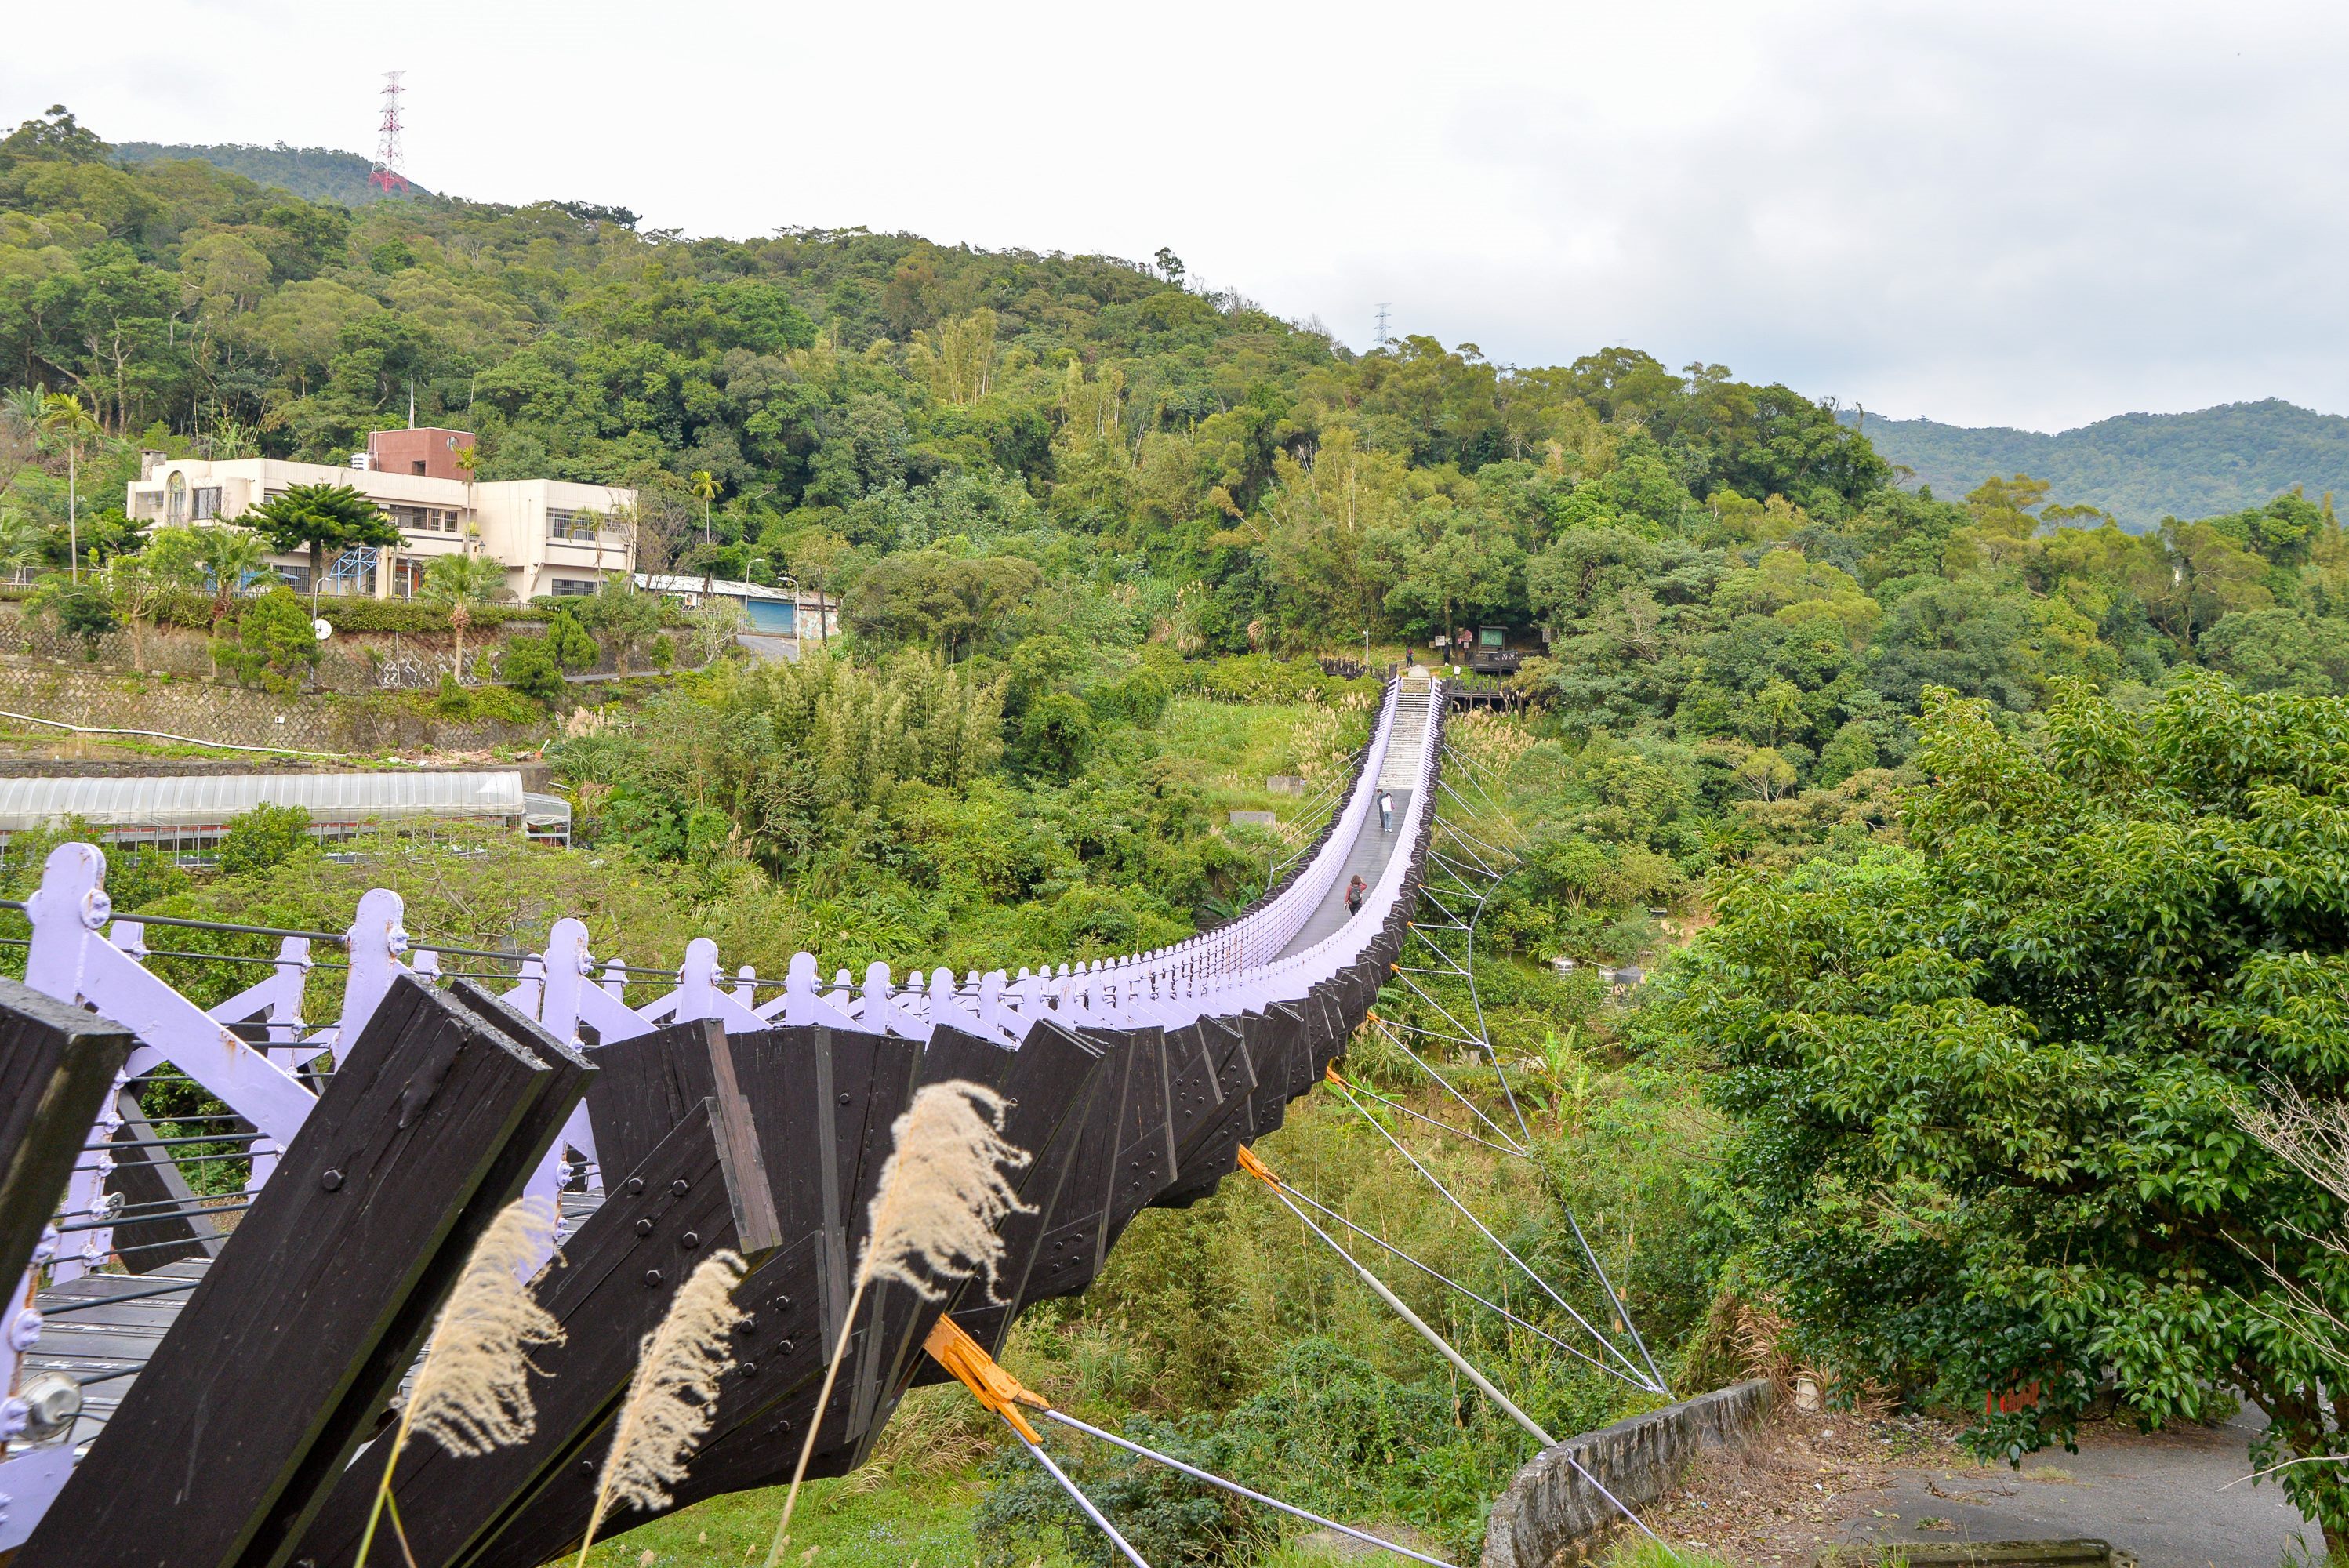 The suspension bridge at Baishihu